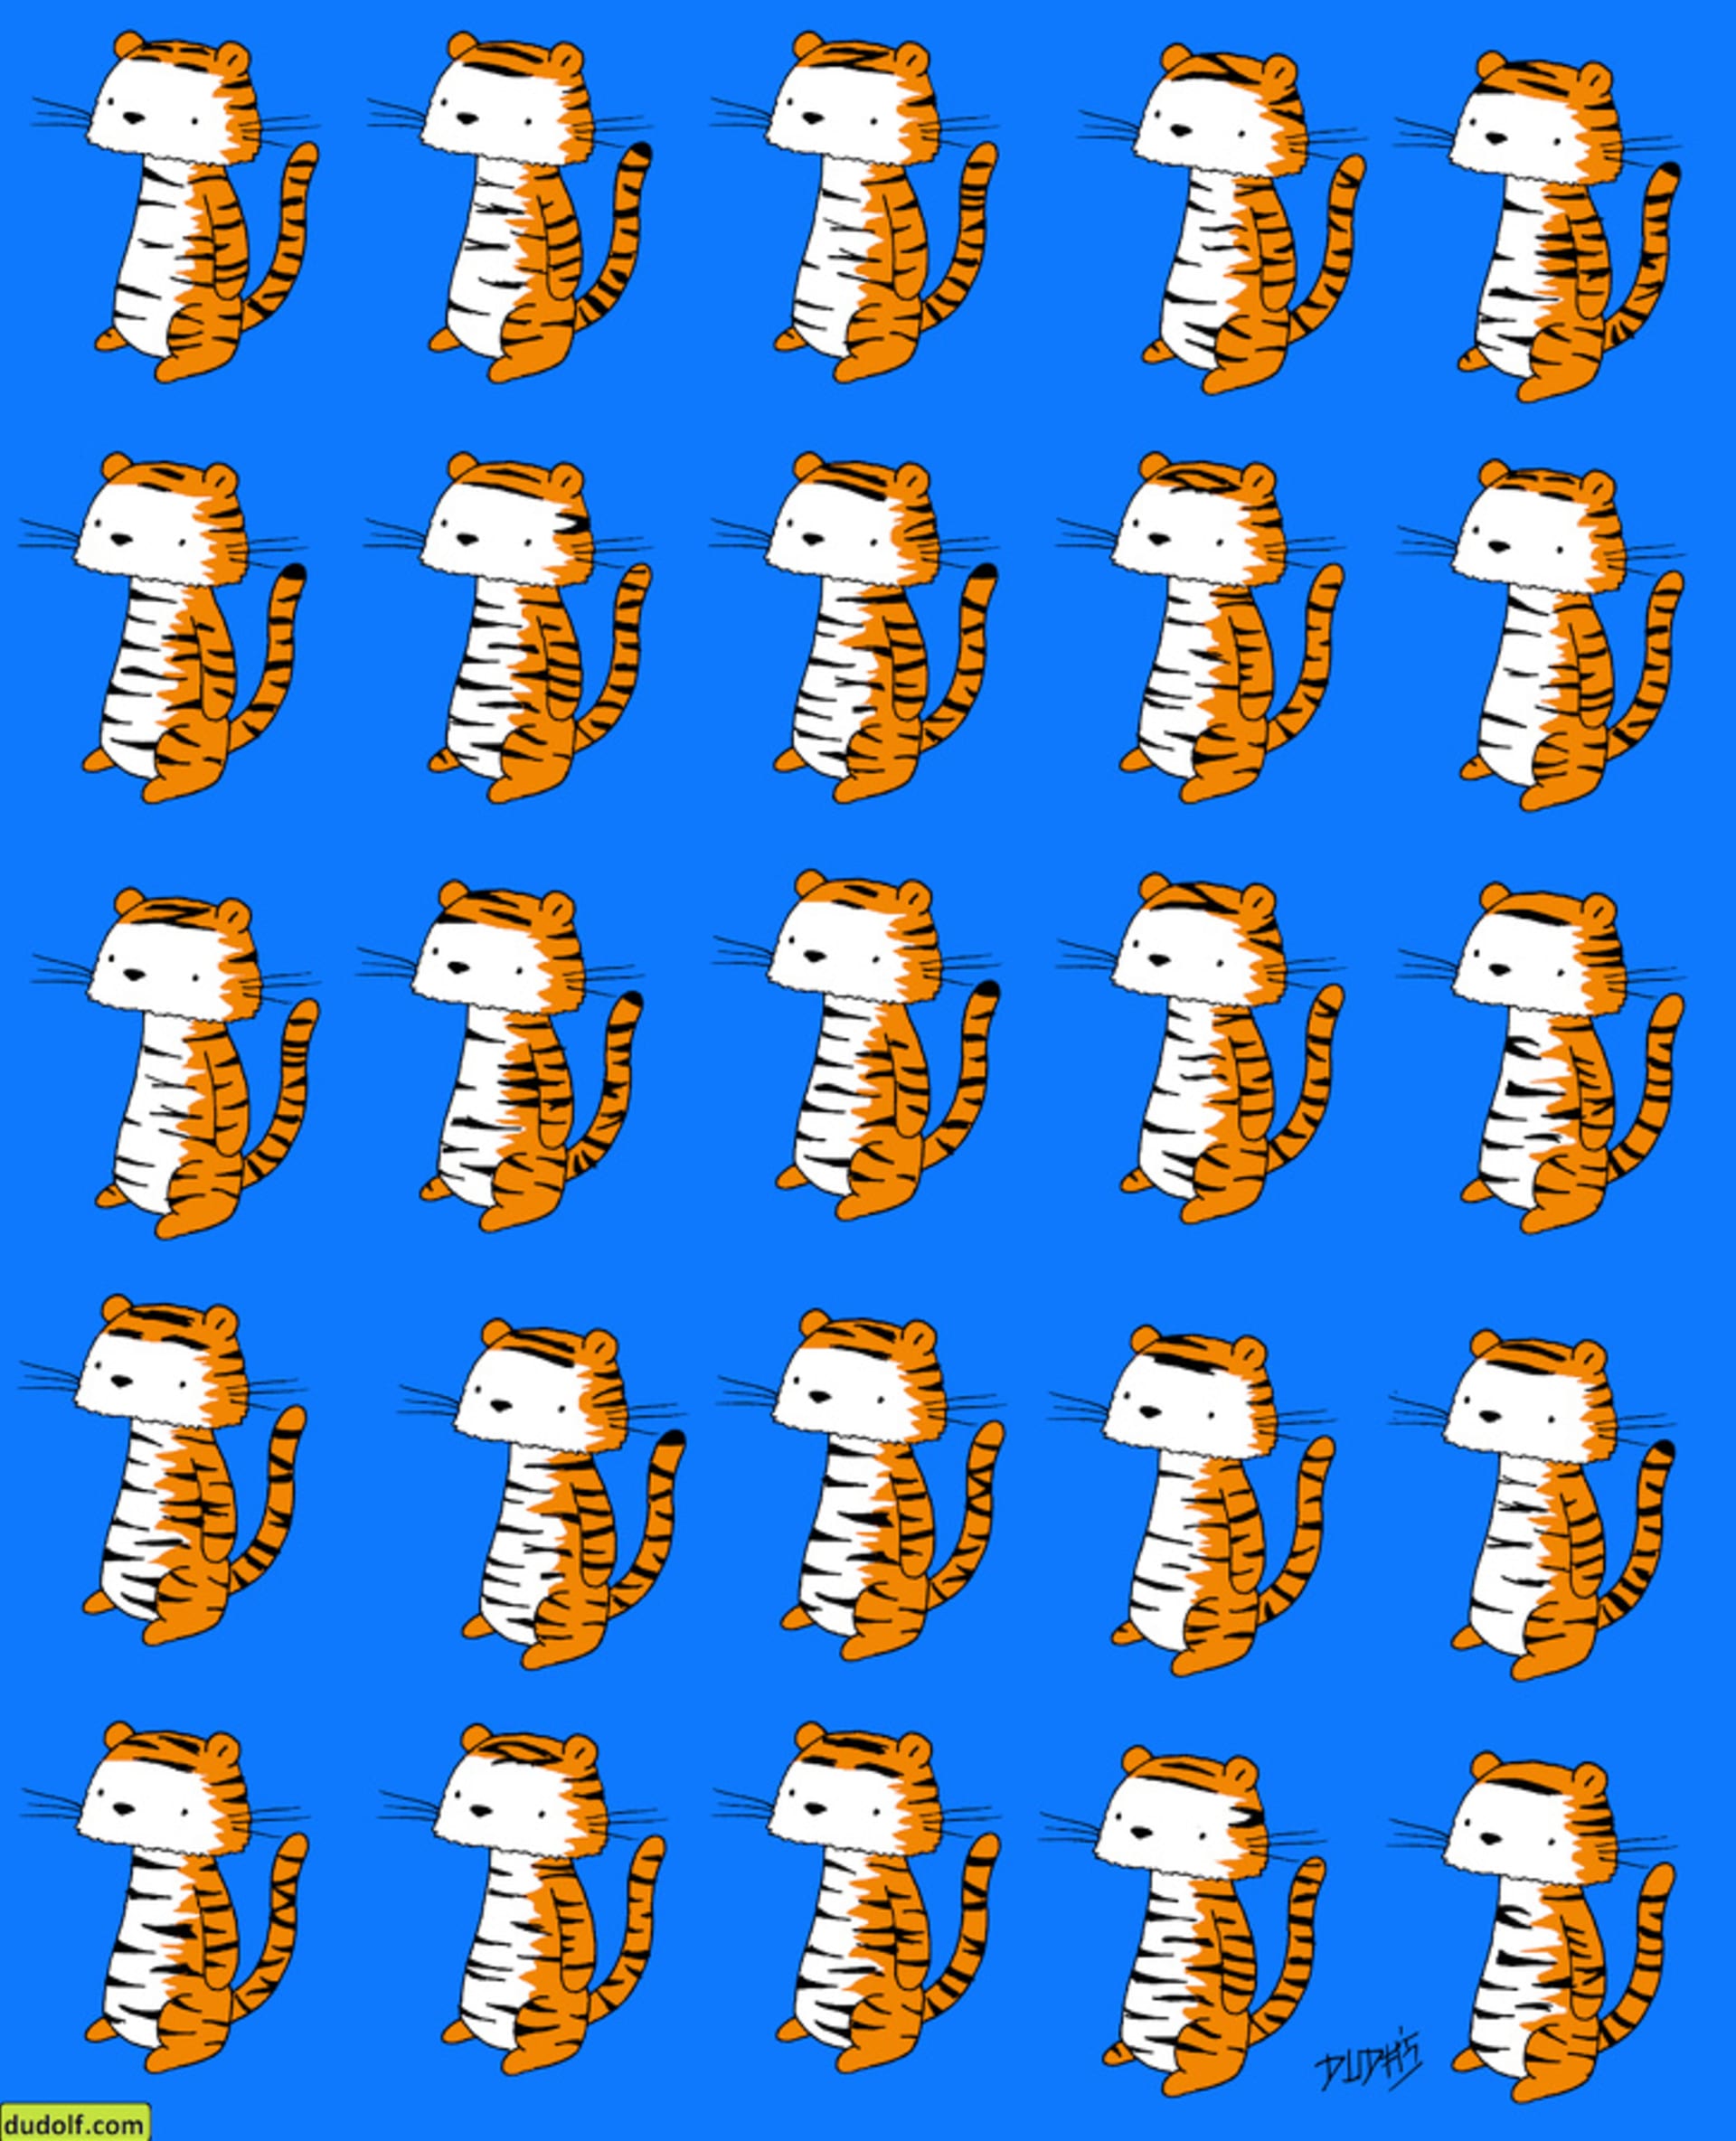 Kde je tygr bez dvojníka? 1